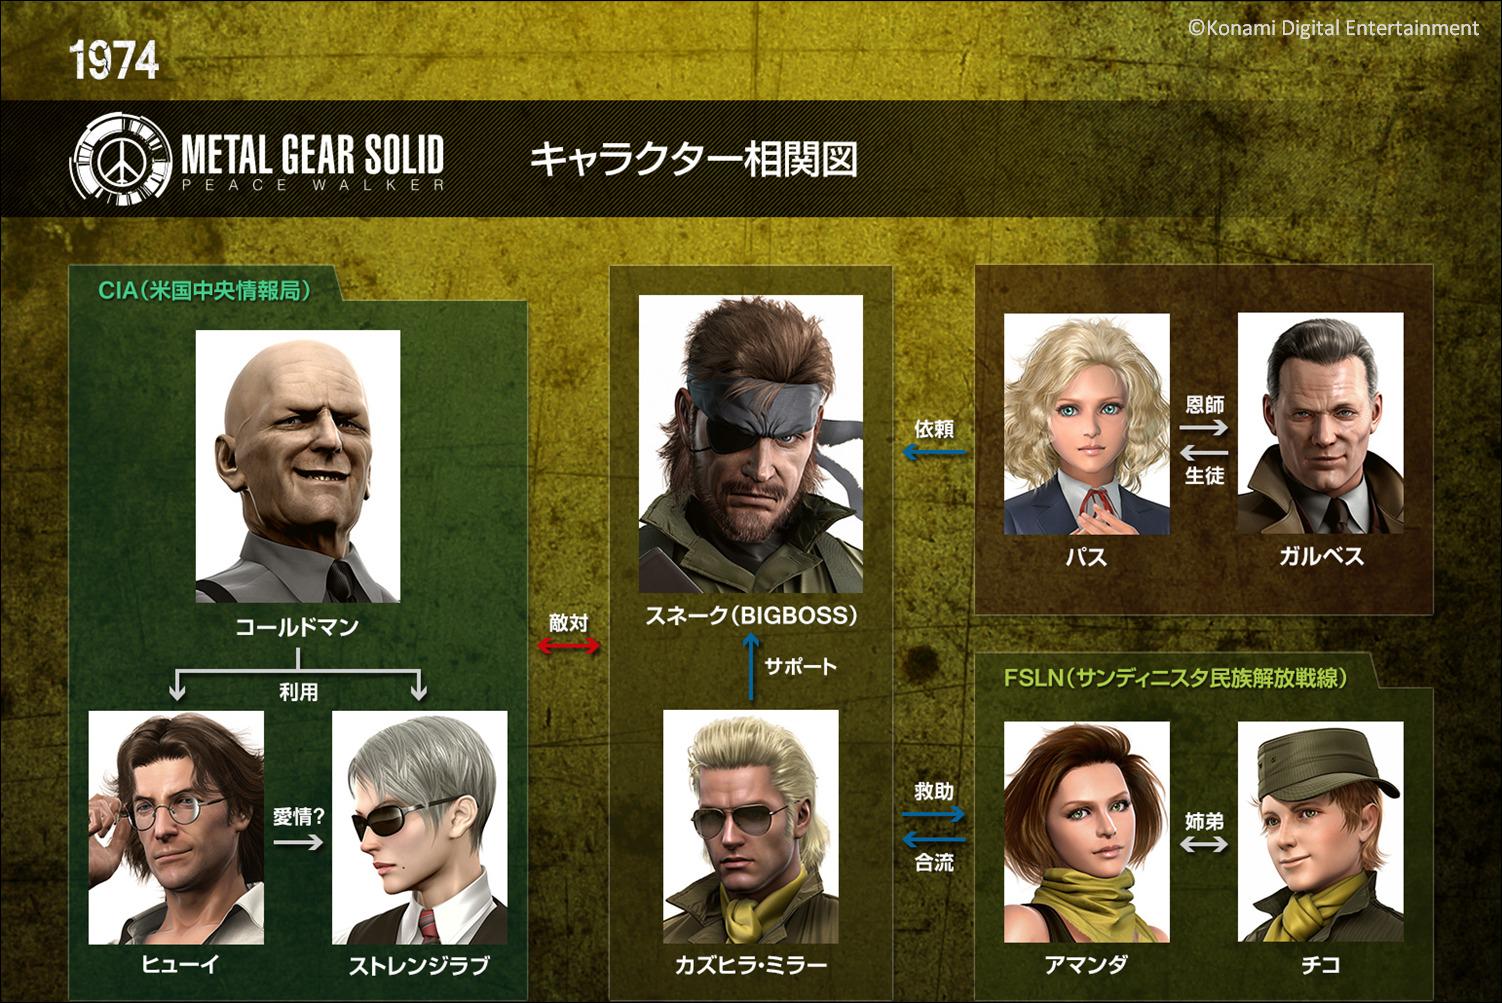 メタルギア公式 Metal Gear Mgs Pw は Mgsv のプロローグである Gz へと繋がる物語 公式サイトではストーリーや登場人物の相関図を公開中 これからプレーする方 既にプレーされた方も是非ご覧ください Http T Co Hkcaunbw4e Http T Co